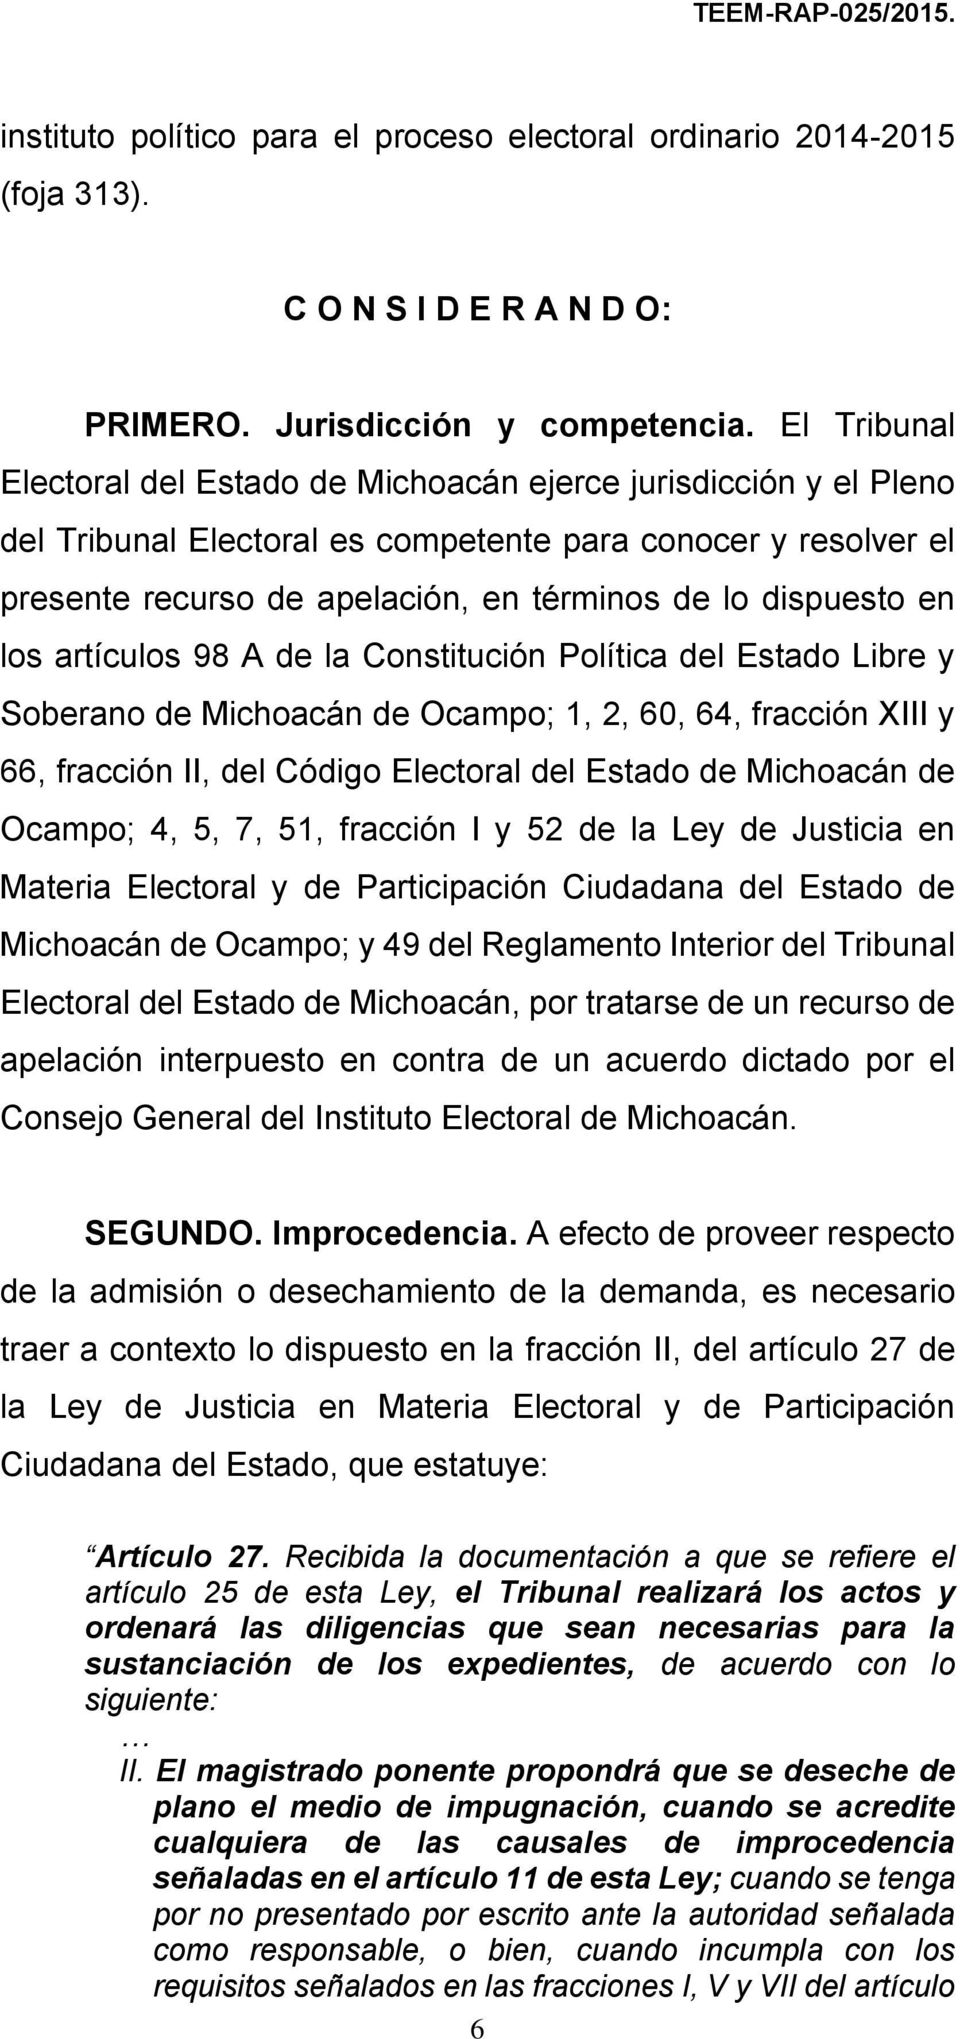 en los artículos 98 A de la Constitución Política del Estado Libre y Soberano de Michoacán de Ocampo; 1, 2, 60, 64, fracción XIII y 66, fracción II, del Código Electoral del Estado de Michoacán de